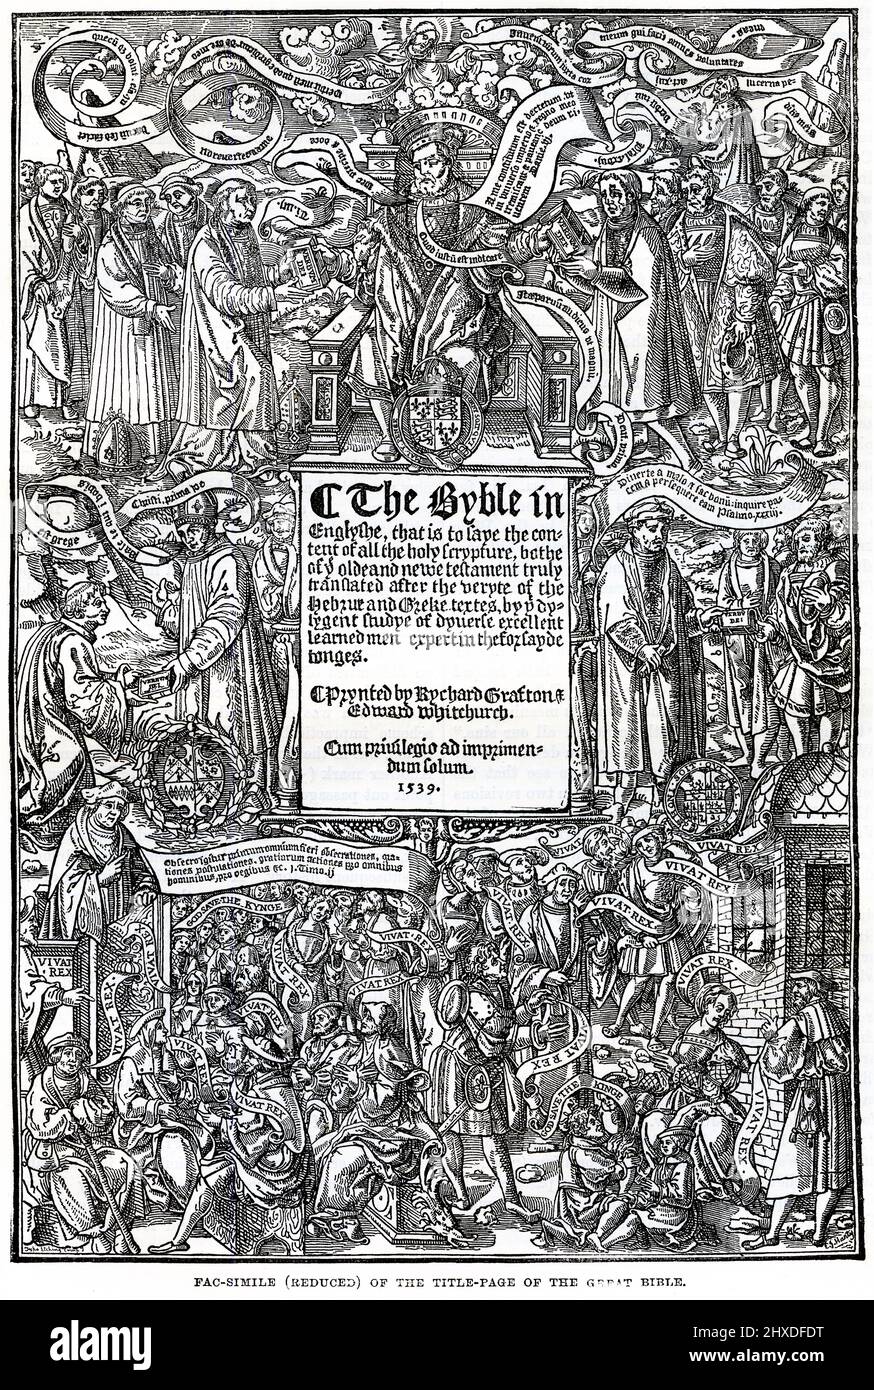 L'incisione di una pagina del titolo della Grande Bibbia del 1539 fu la prima edizione autorizzata della Bibbia in inglese, autorizzata da re Enrico VIII d'Inghilterra ad essere letta ad alta voce nei servizi della Chiesa d'Inghilterra. Foto Stock